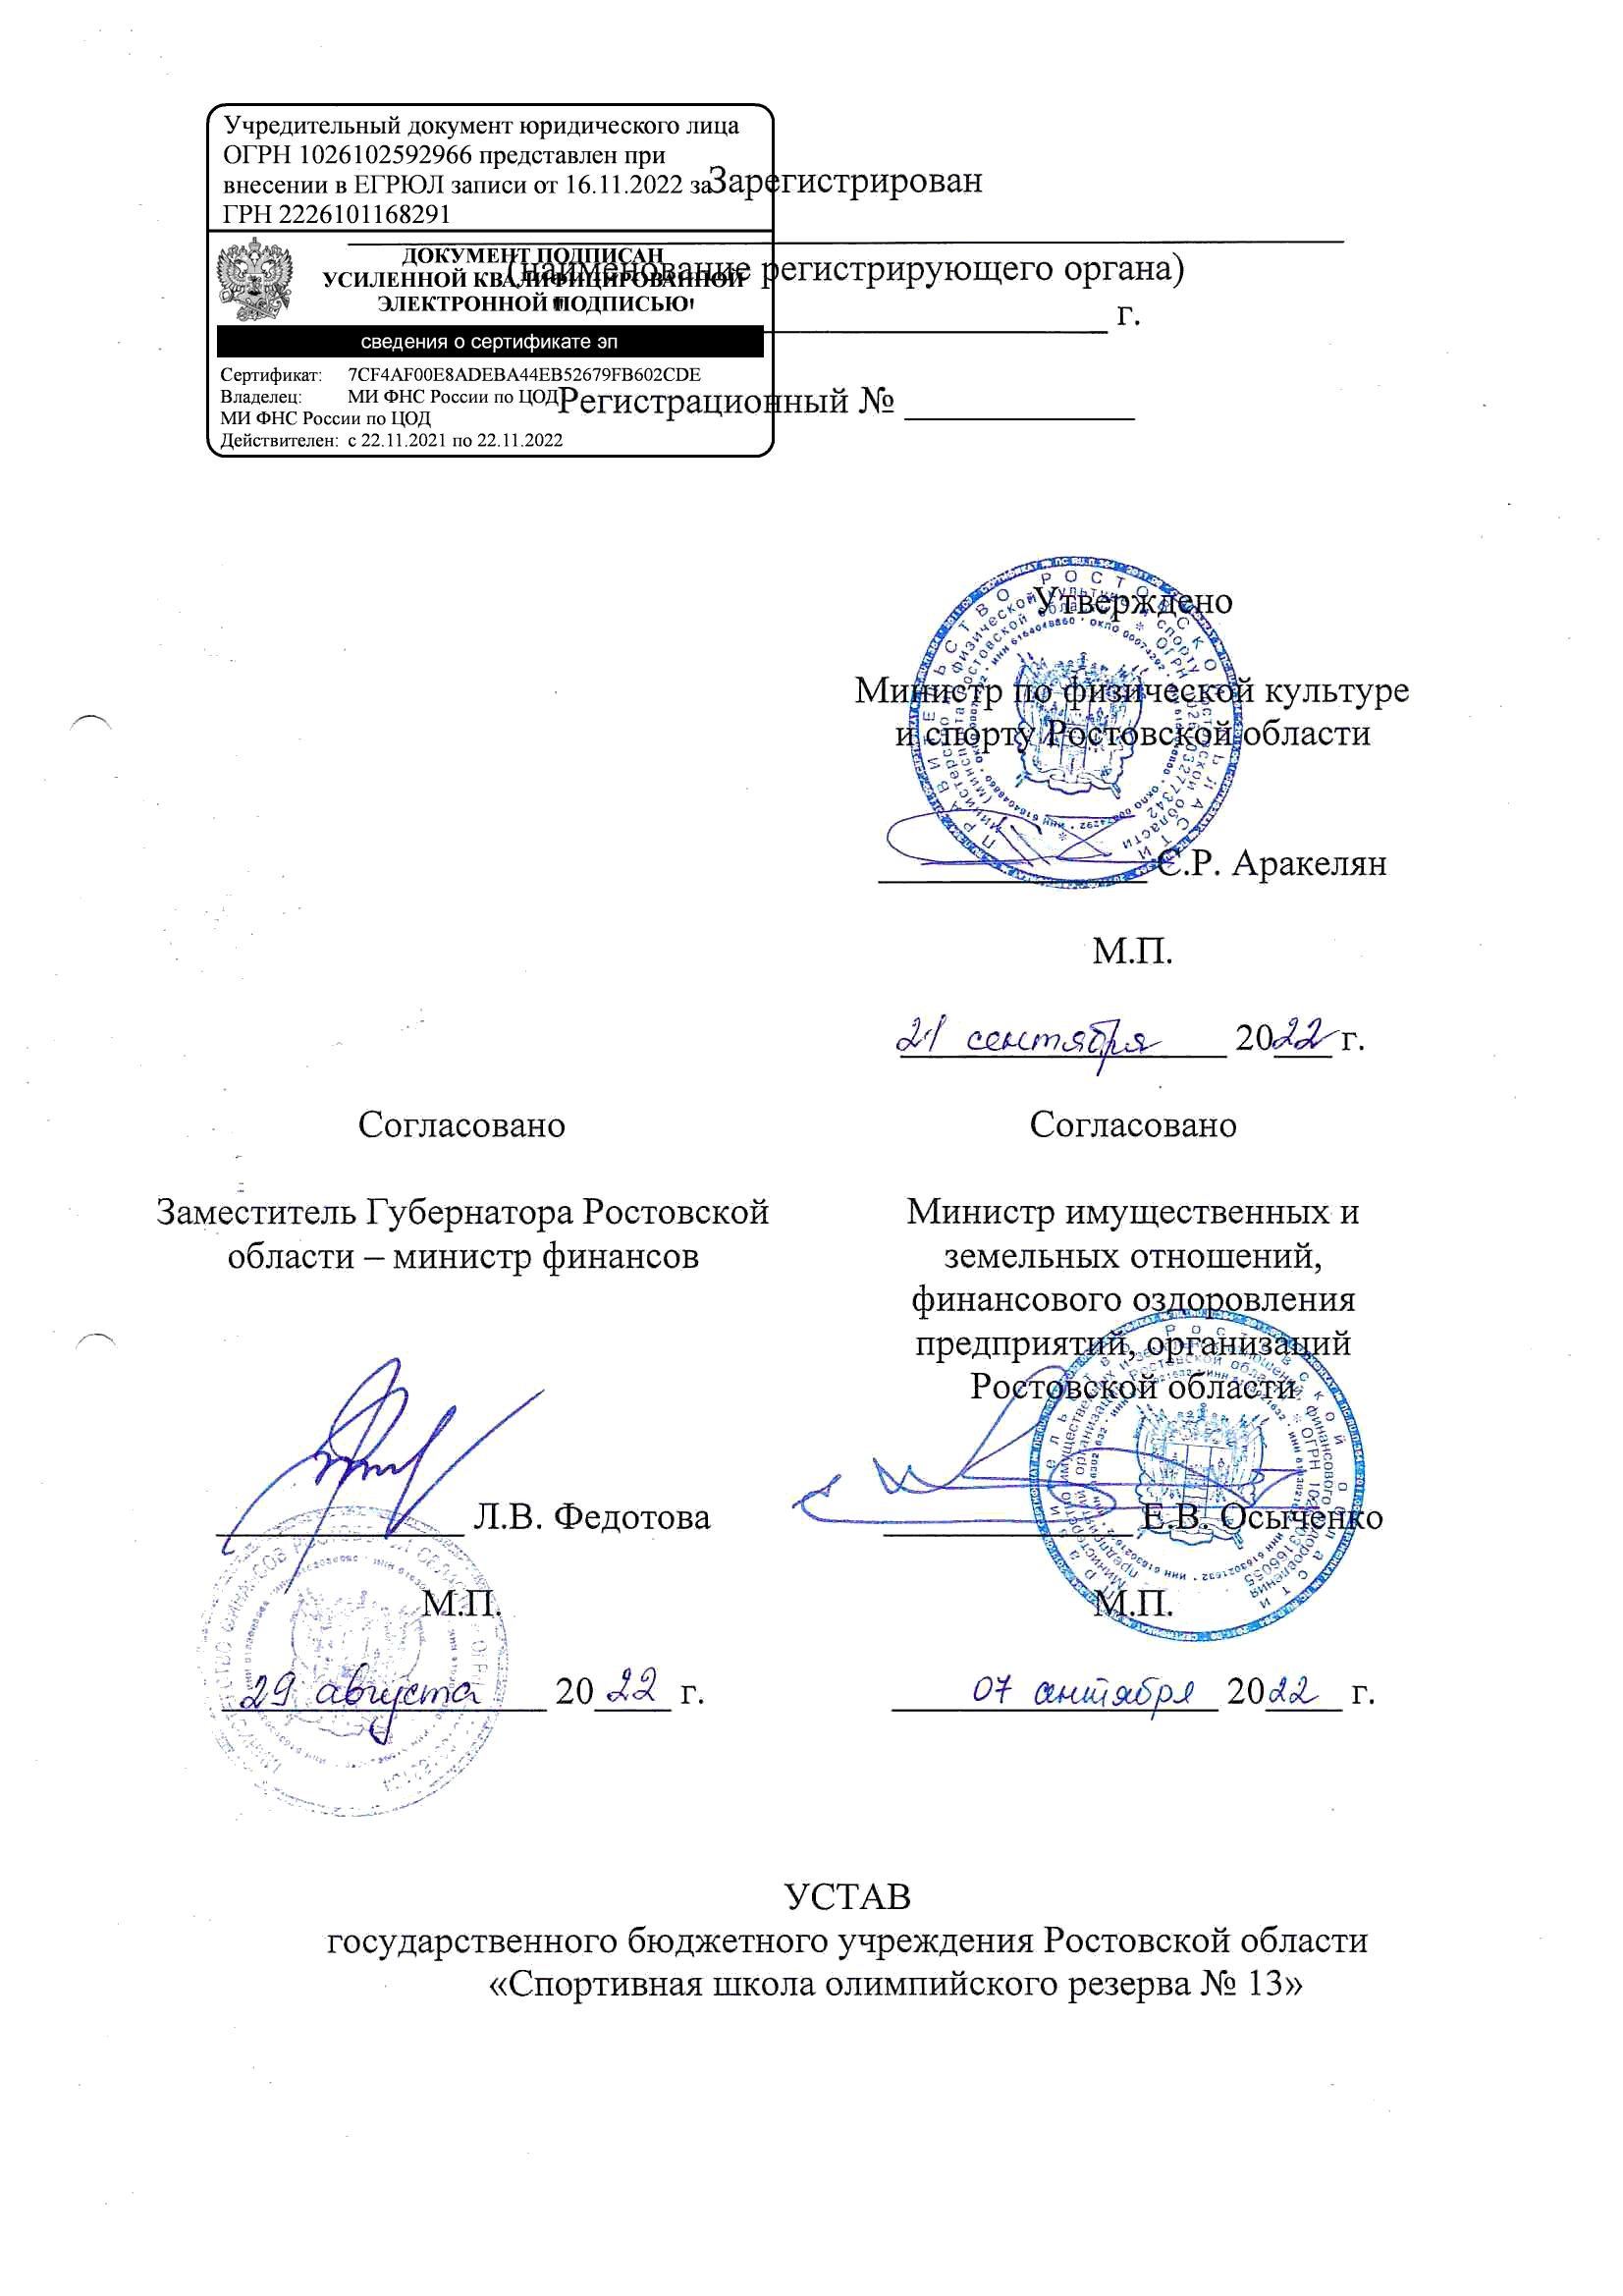 Устав ГБУ РО СШОР 13 от 16.11.2022г.